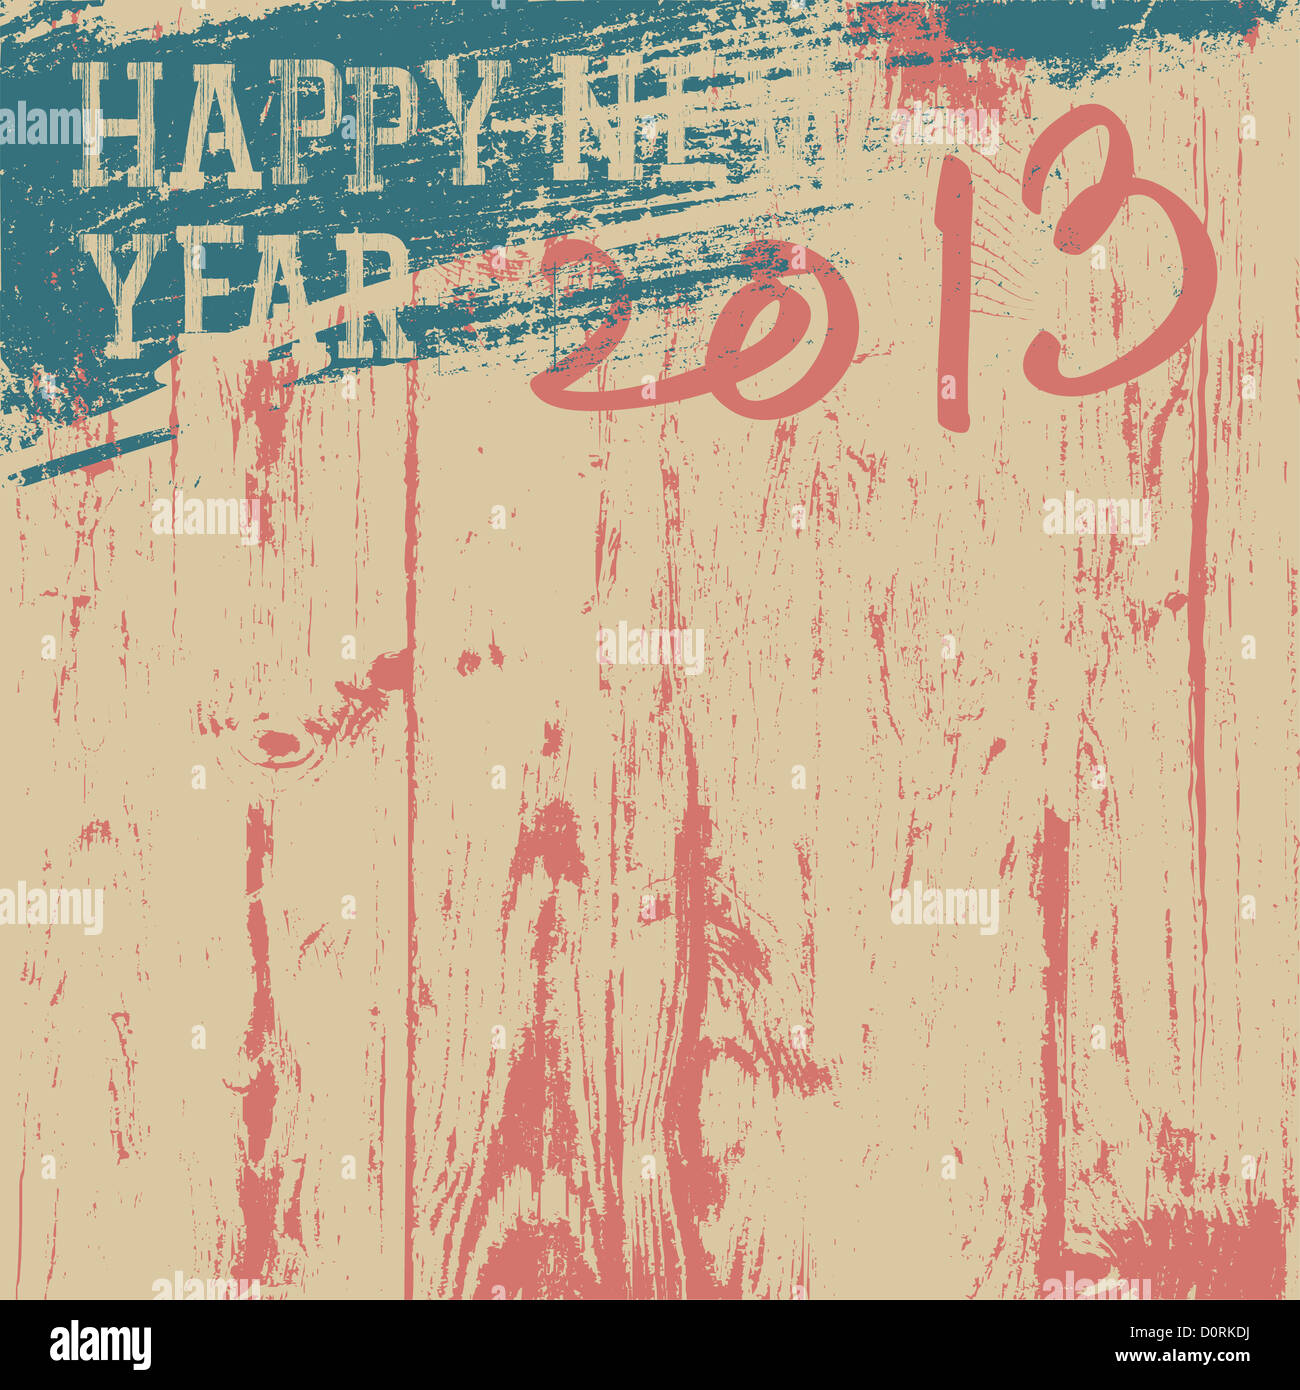 2013 New Year background retro styled Stock Photo